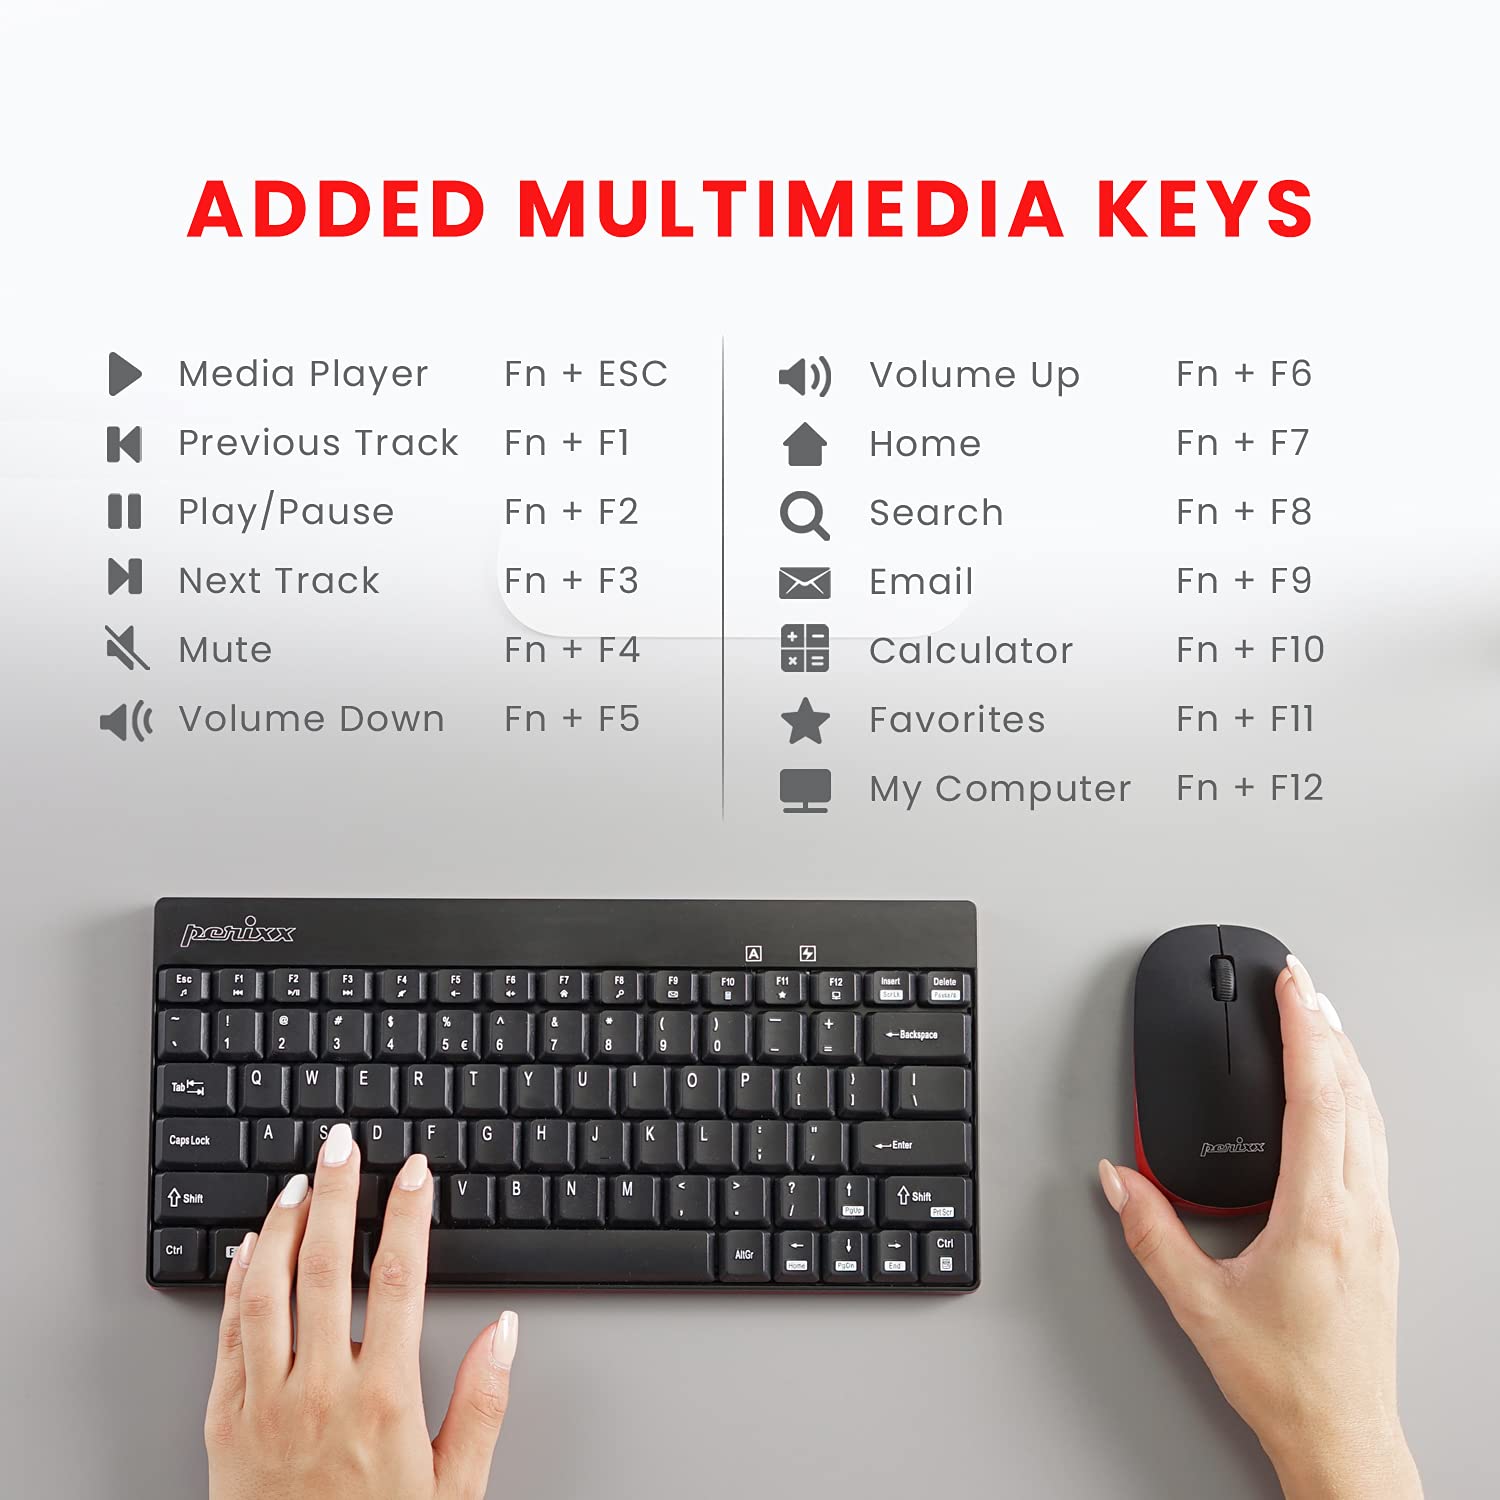 Perixx Periduo-712B Wireless Mini Keyboard and Mouse Set, Black, US English Layout